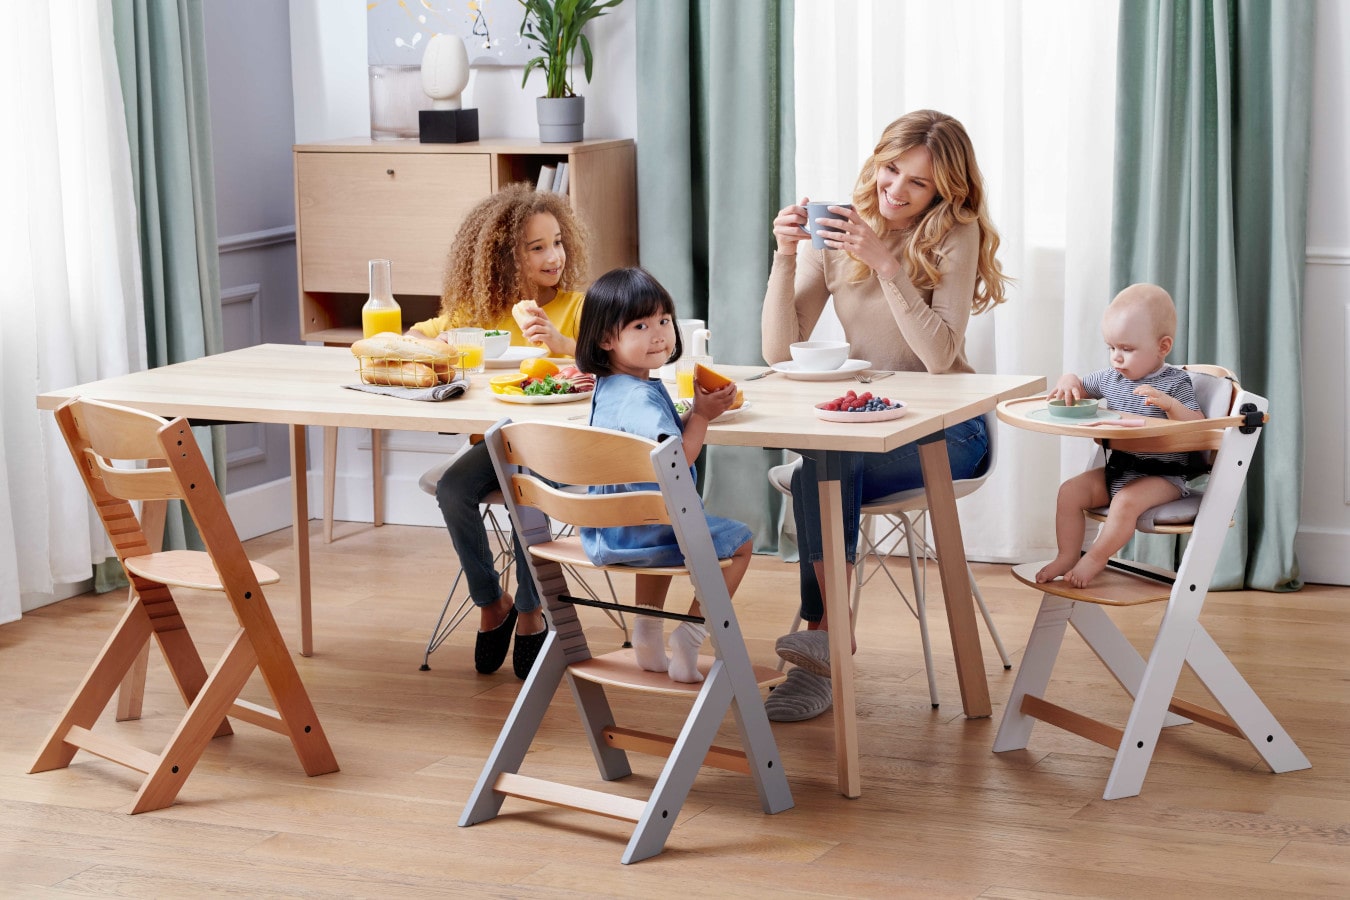 La maman et trois enfants sont assis à la même table, la maman boit du café, les enfants sont heureux. La chaise ENOCK existe en 3 configurations - de la chaise haute à la chaise pour un enfant plus âgé.